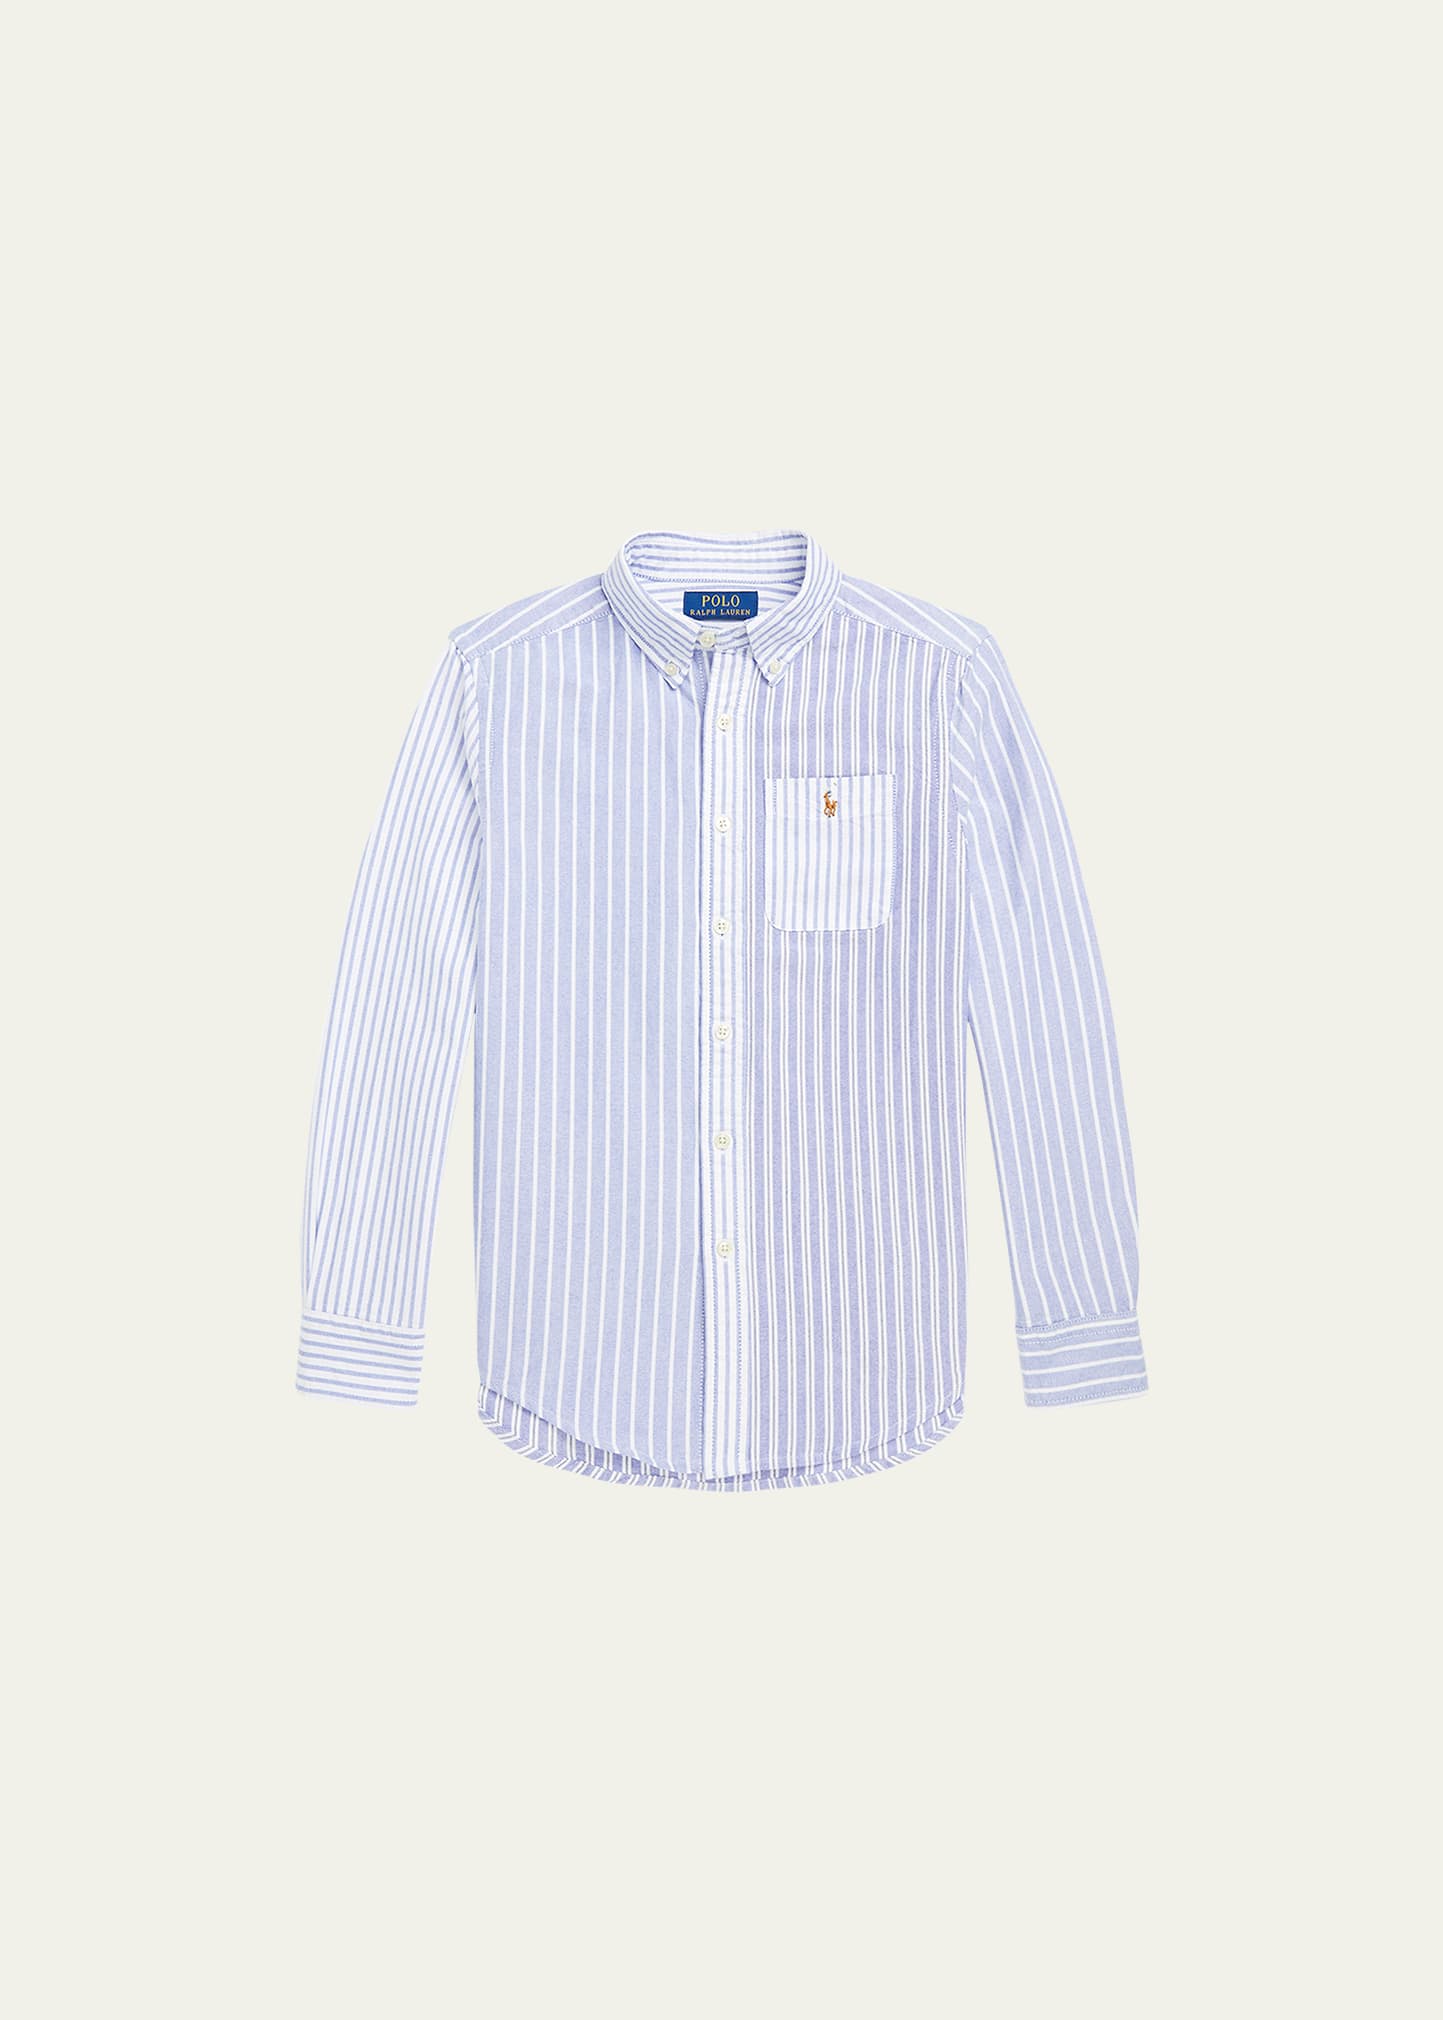 Boy's Striped Oxford Button Down Shirt, Size S-XL